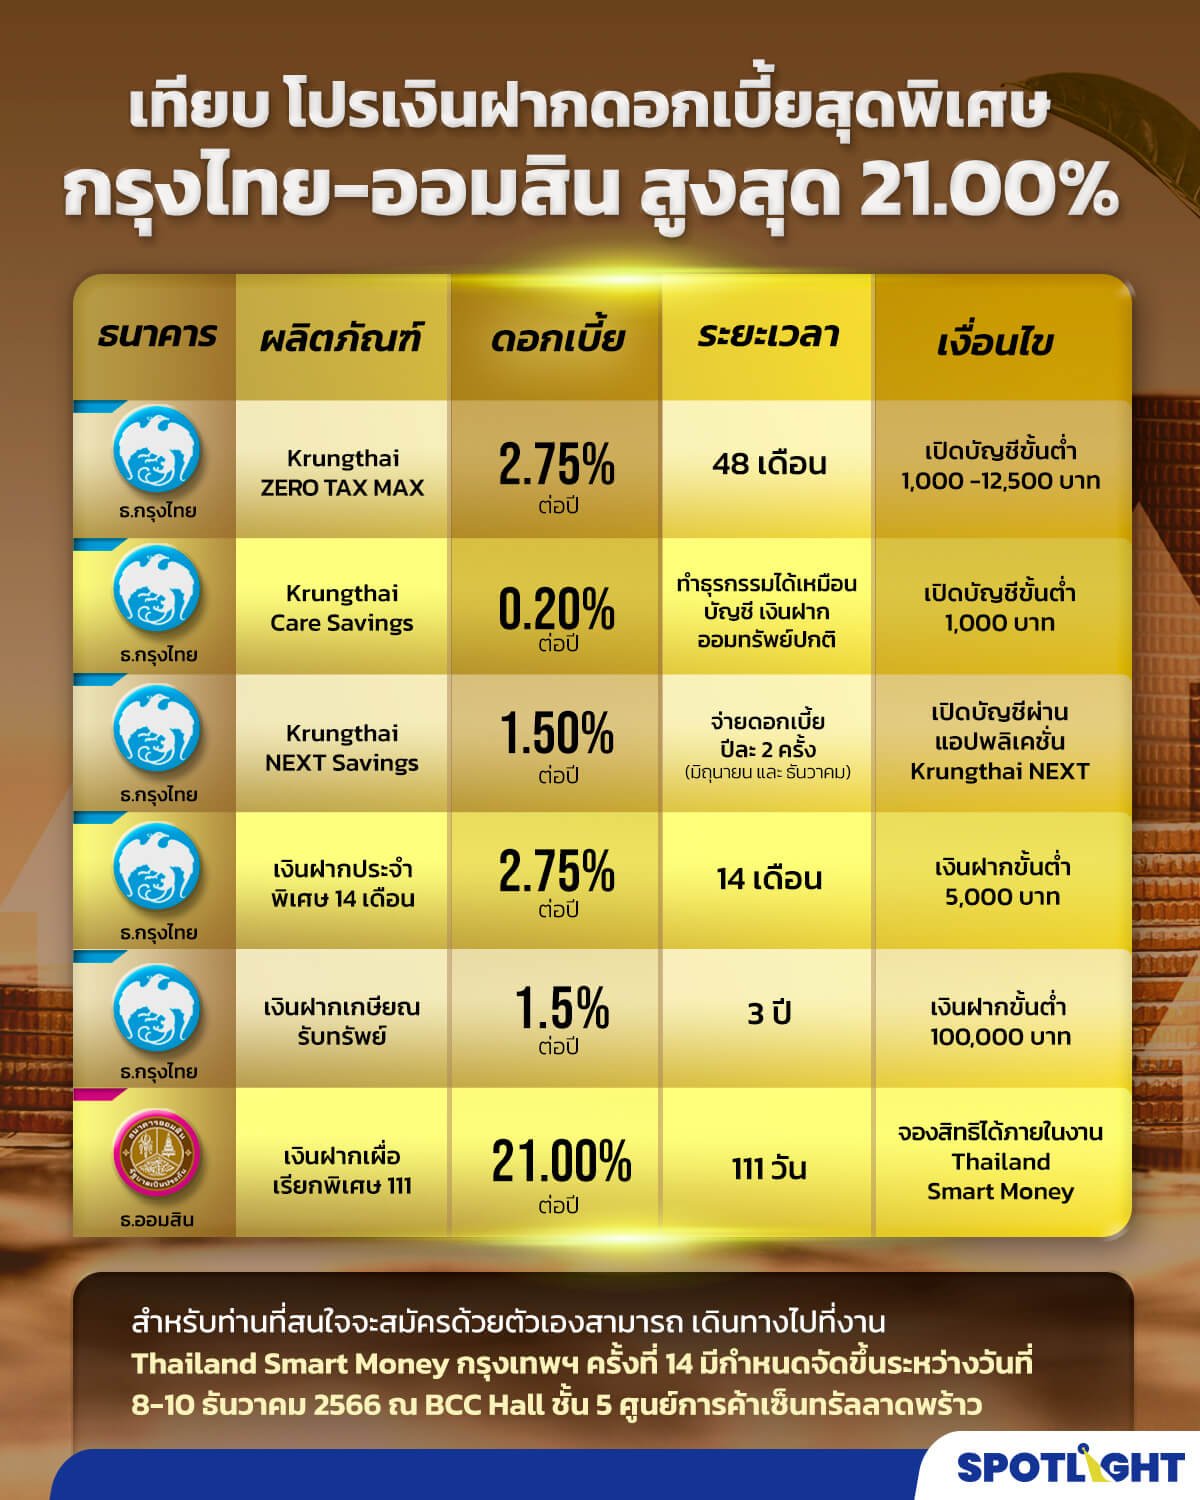 กรุงไทย-ออมสิน อัดโปรแรง เงินฝากดอกเบี้ยพิเศษแบบ Step up สูงสุด 21.00%